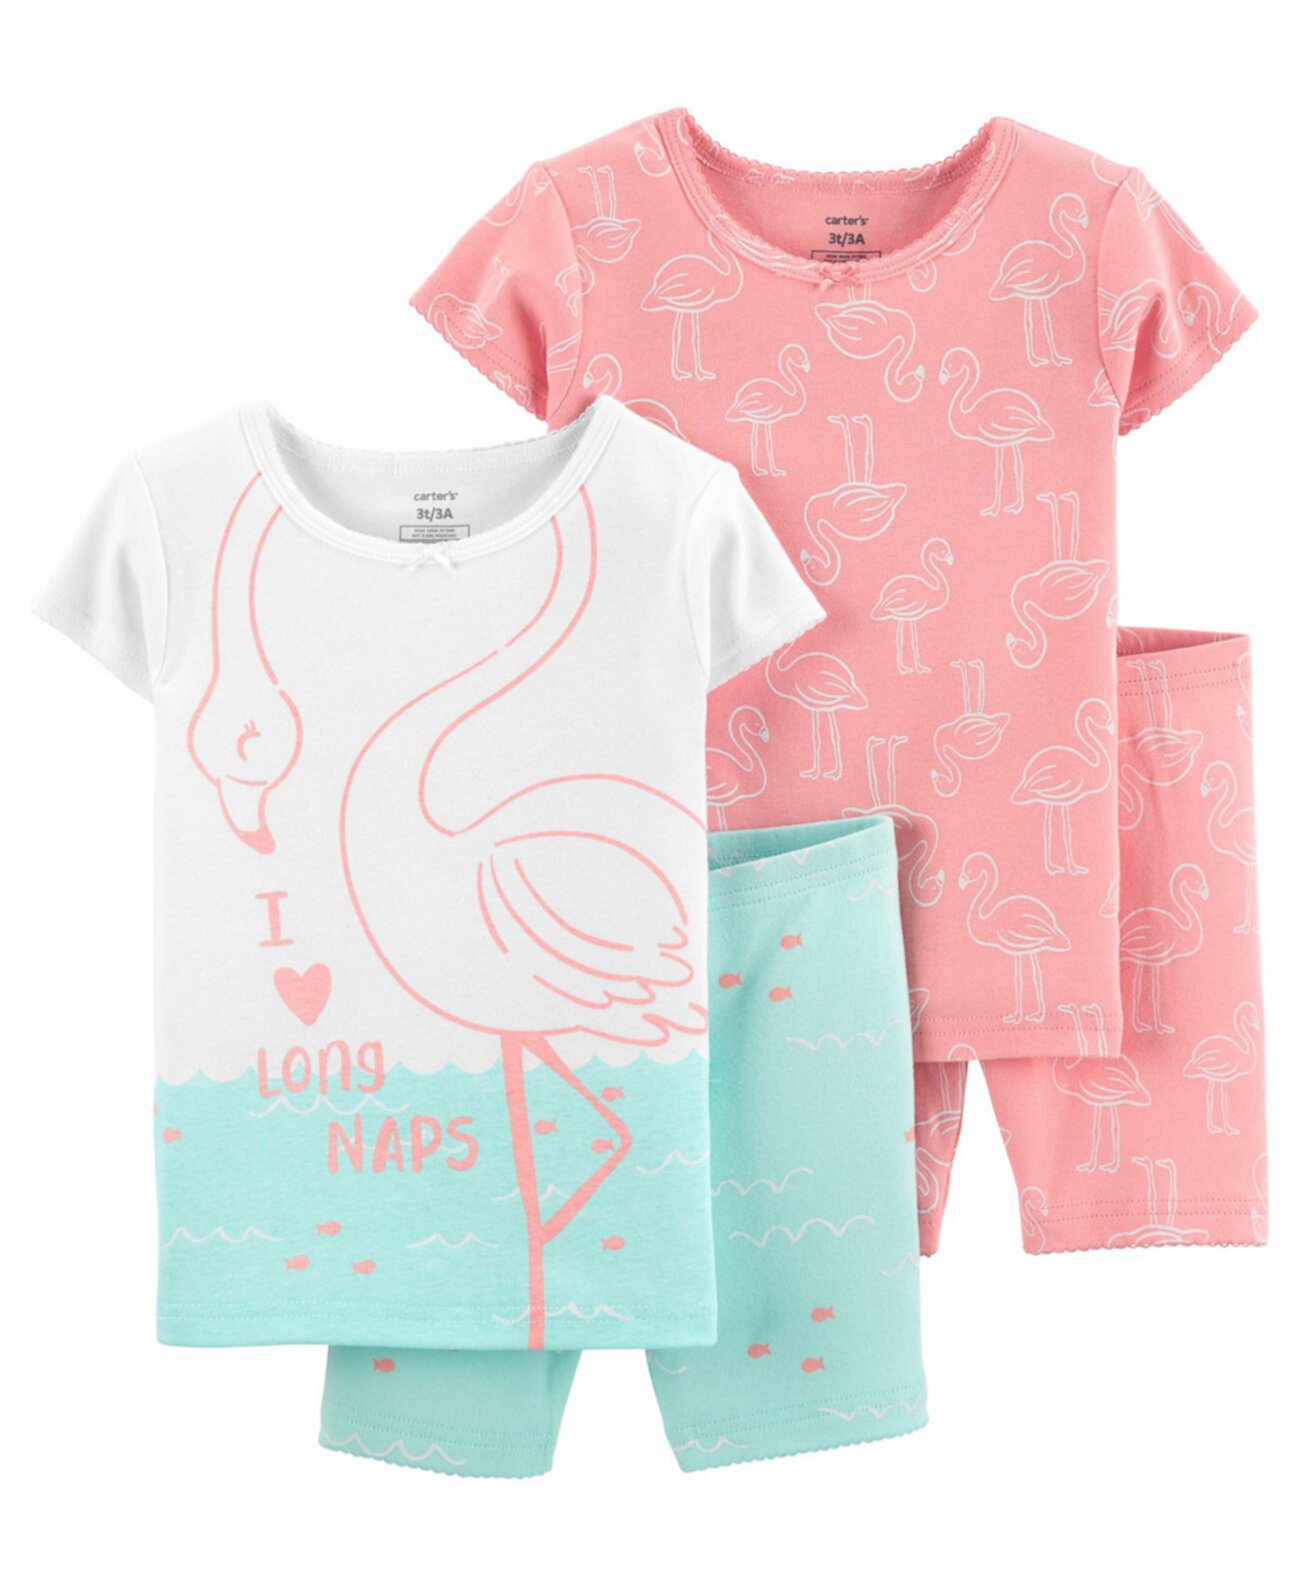 Хлопковые пижамы с фламинго для маленьких девочек, 4 шт. Carter's